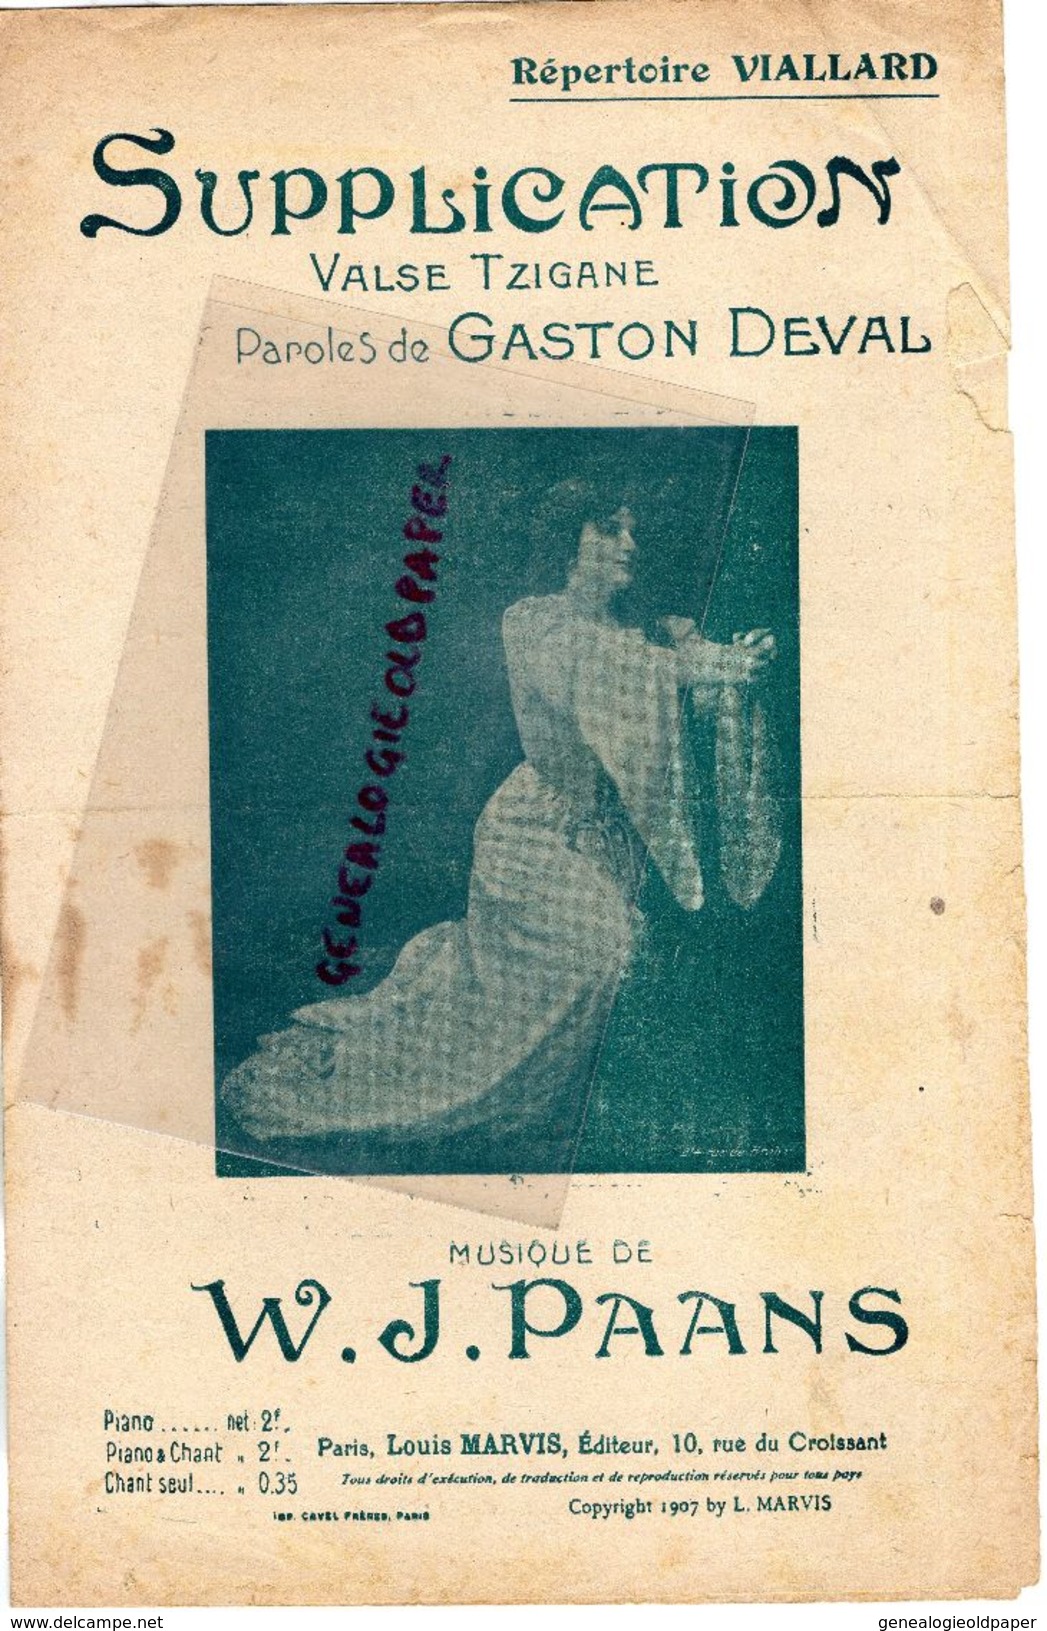 PARTITION MUSIQUE- SUPPLICATION-VALSE TZIGANE-GASTON DEVAL*VIALLARD- W.J. PAANS-EDITEUR LOUIS MARVIS PARIS-1907 - Partitions Musicales Anciennes